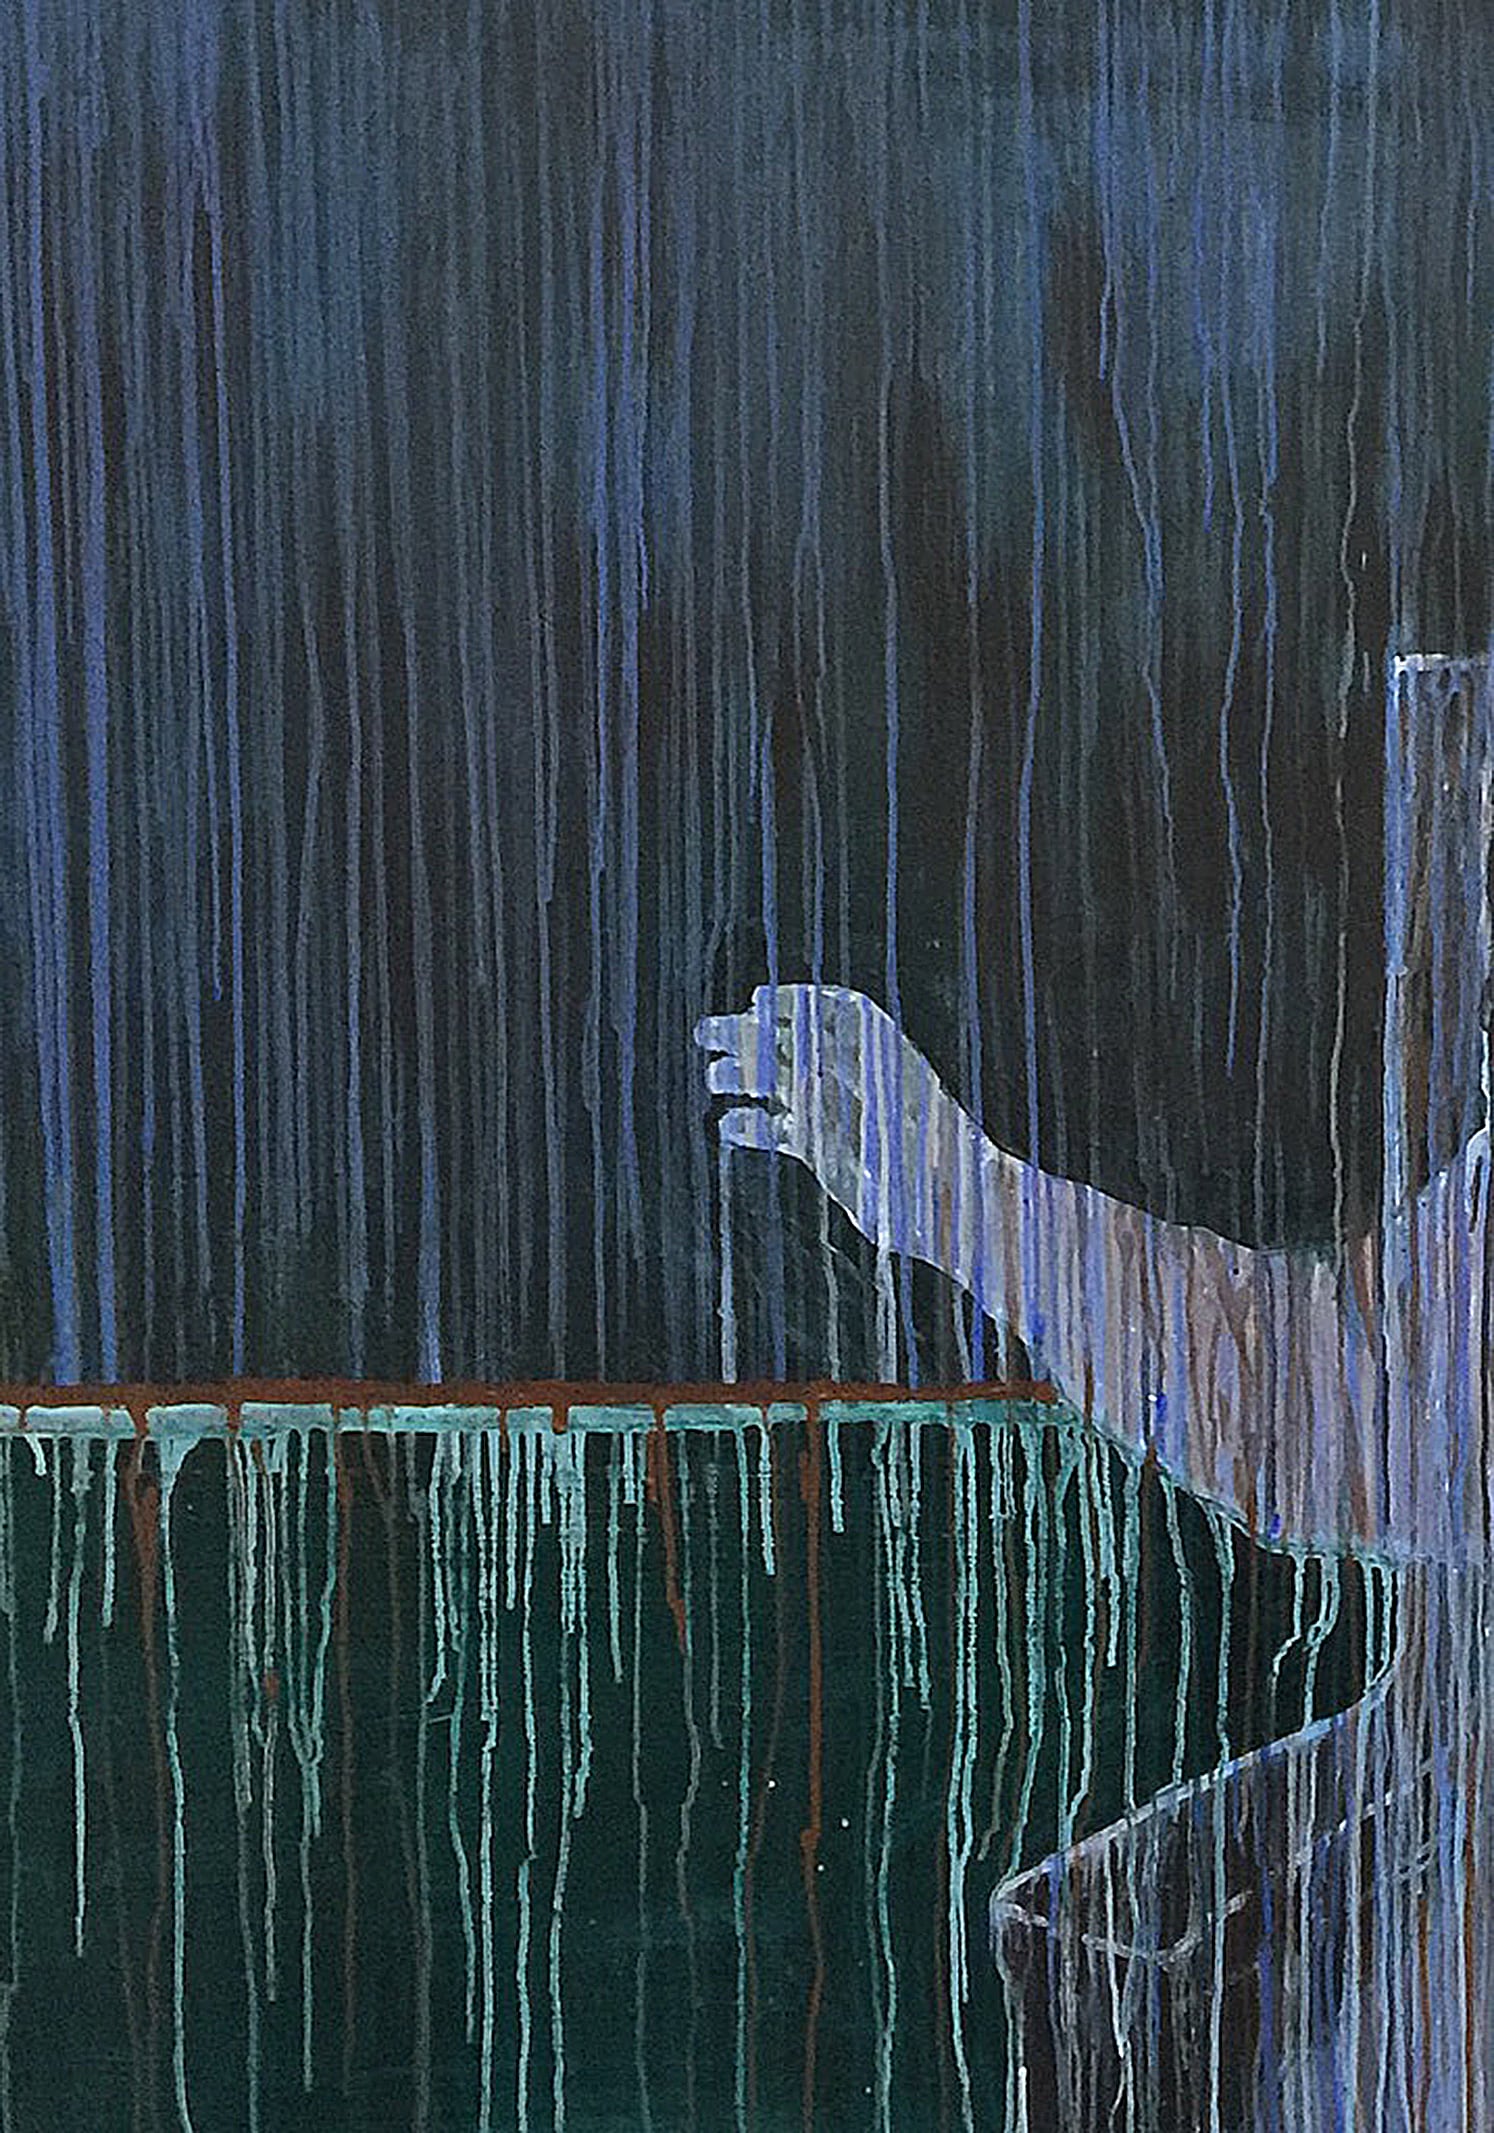 Wang Guangyi, "Shadowed Existence", 2020. Acrilico su tela, 140 ×180 cm